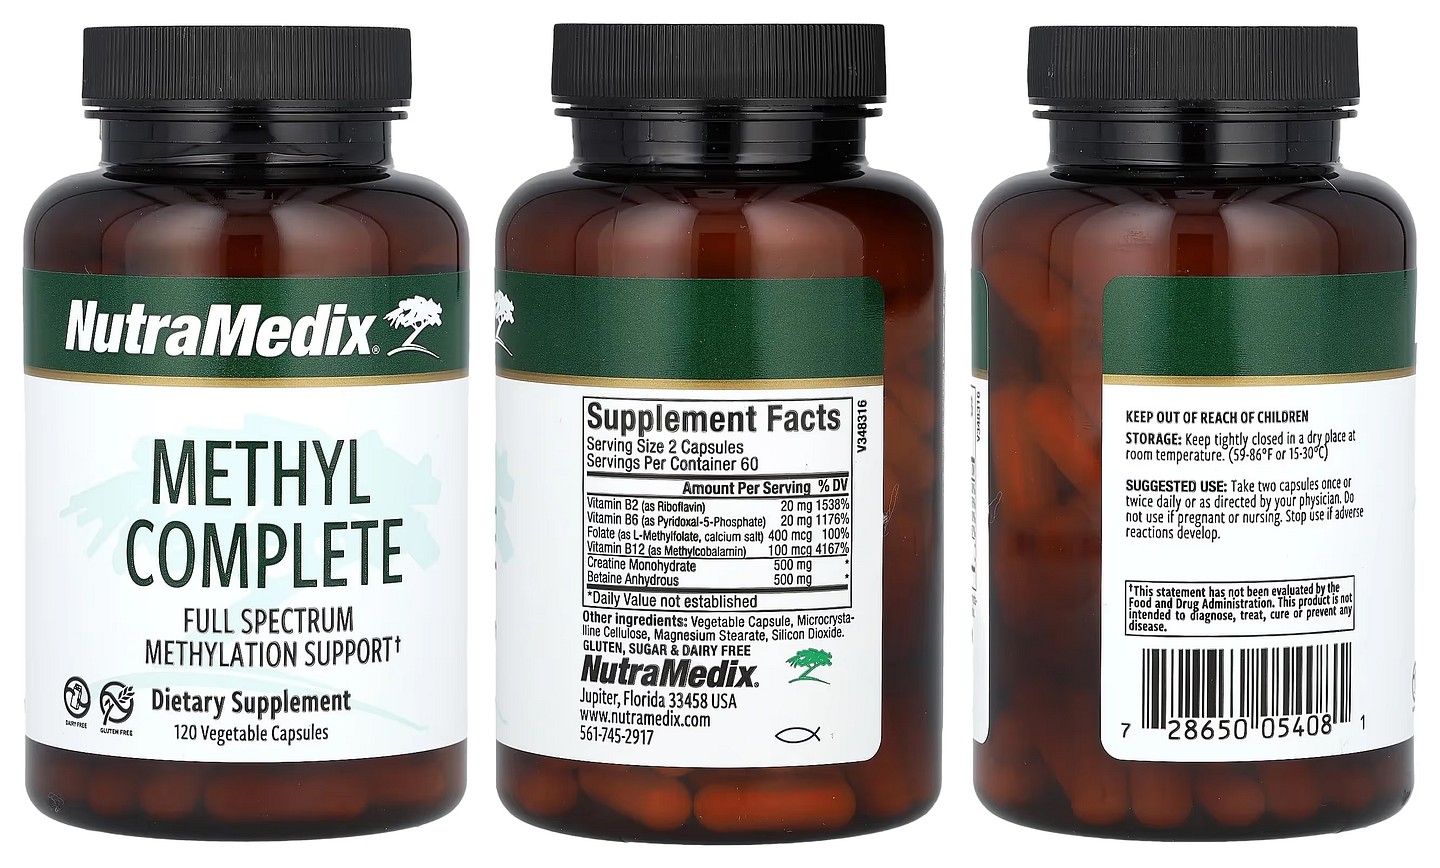 NutraMedix, Methyl Complete packaging